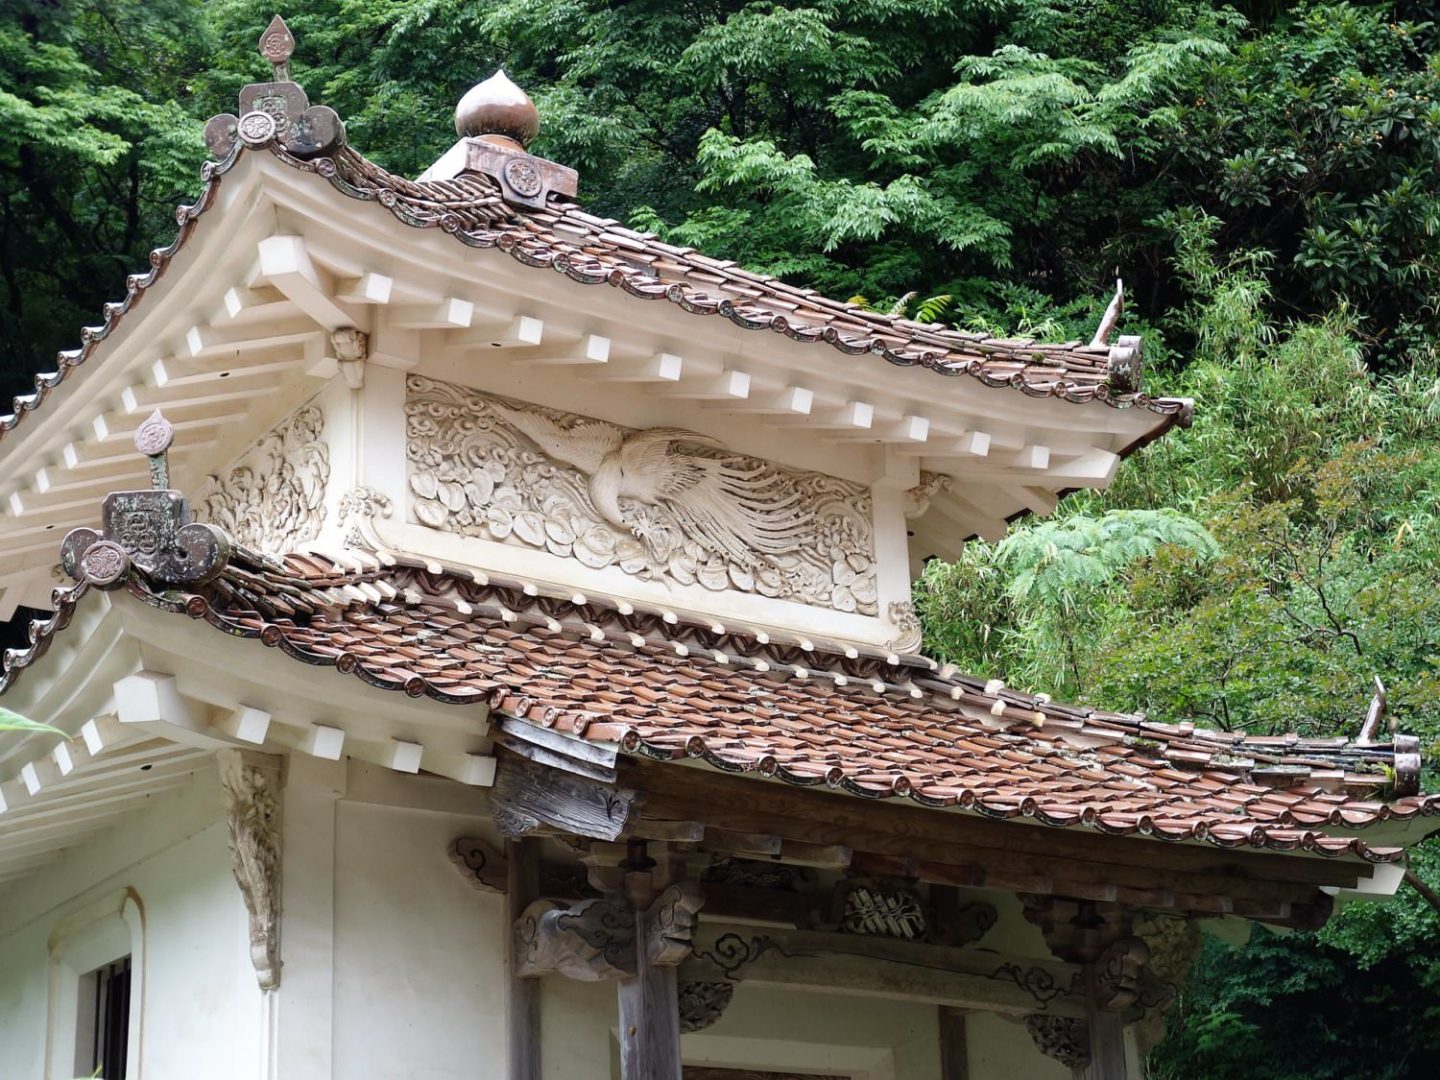 "Kyo-zo" at Saishoji Temple